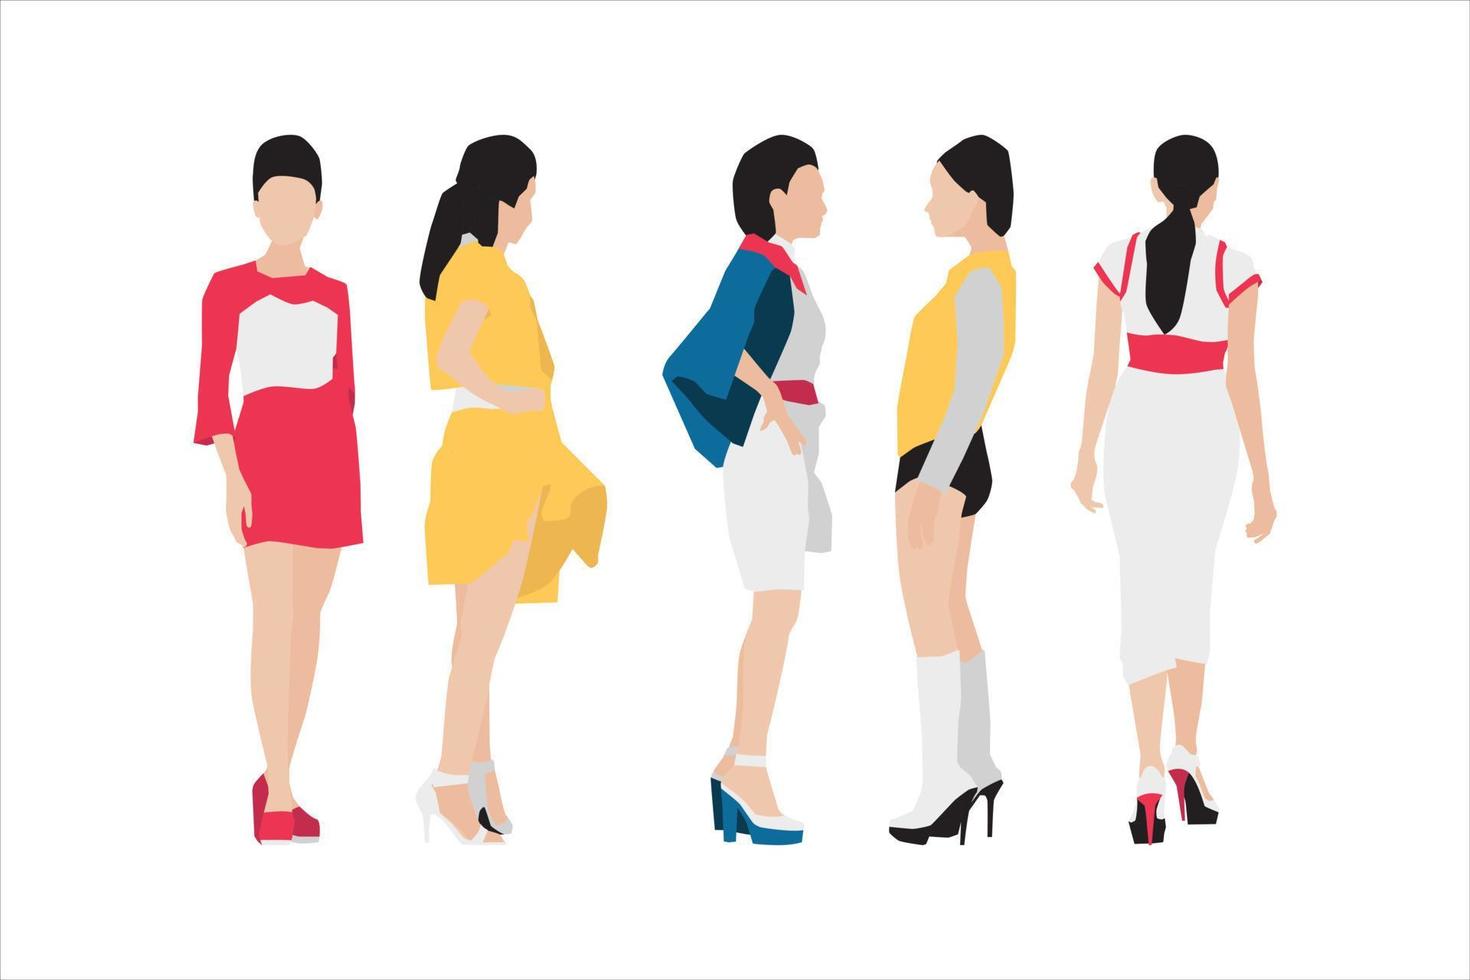 illustration vectorielle du paquet de femmes à la mode vecteur